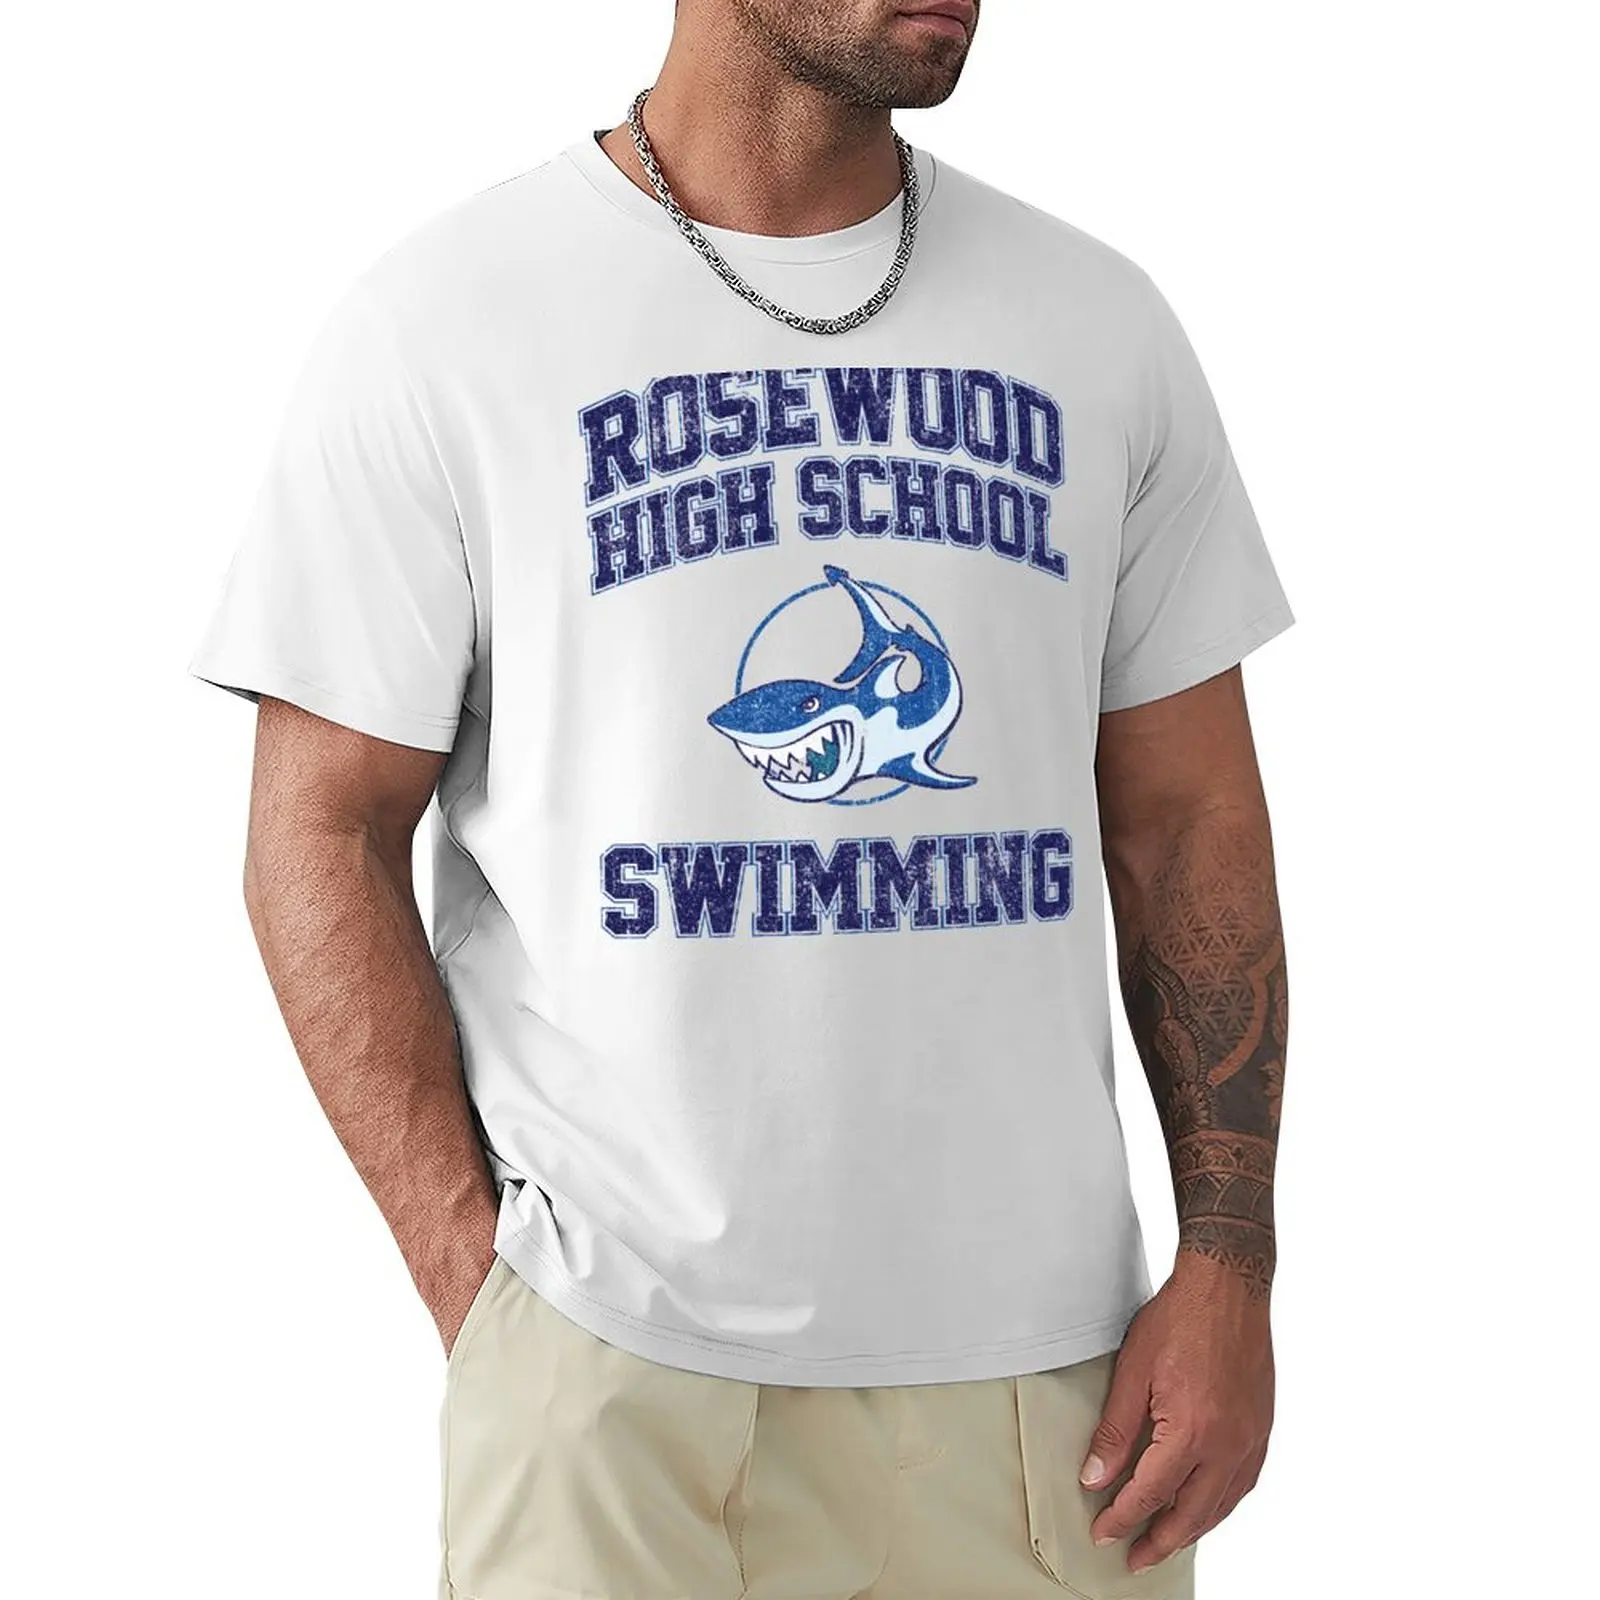 

Футболка Rosewood для школьного плавания (вариант), женские топы, эстетическая одежда, спортивные вееры, быстросохнущая мужская тренировочная рубашка